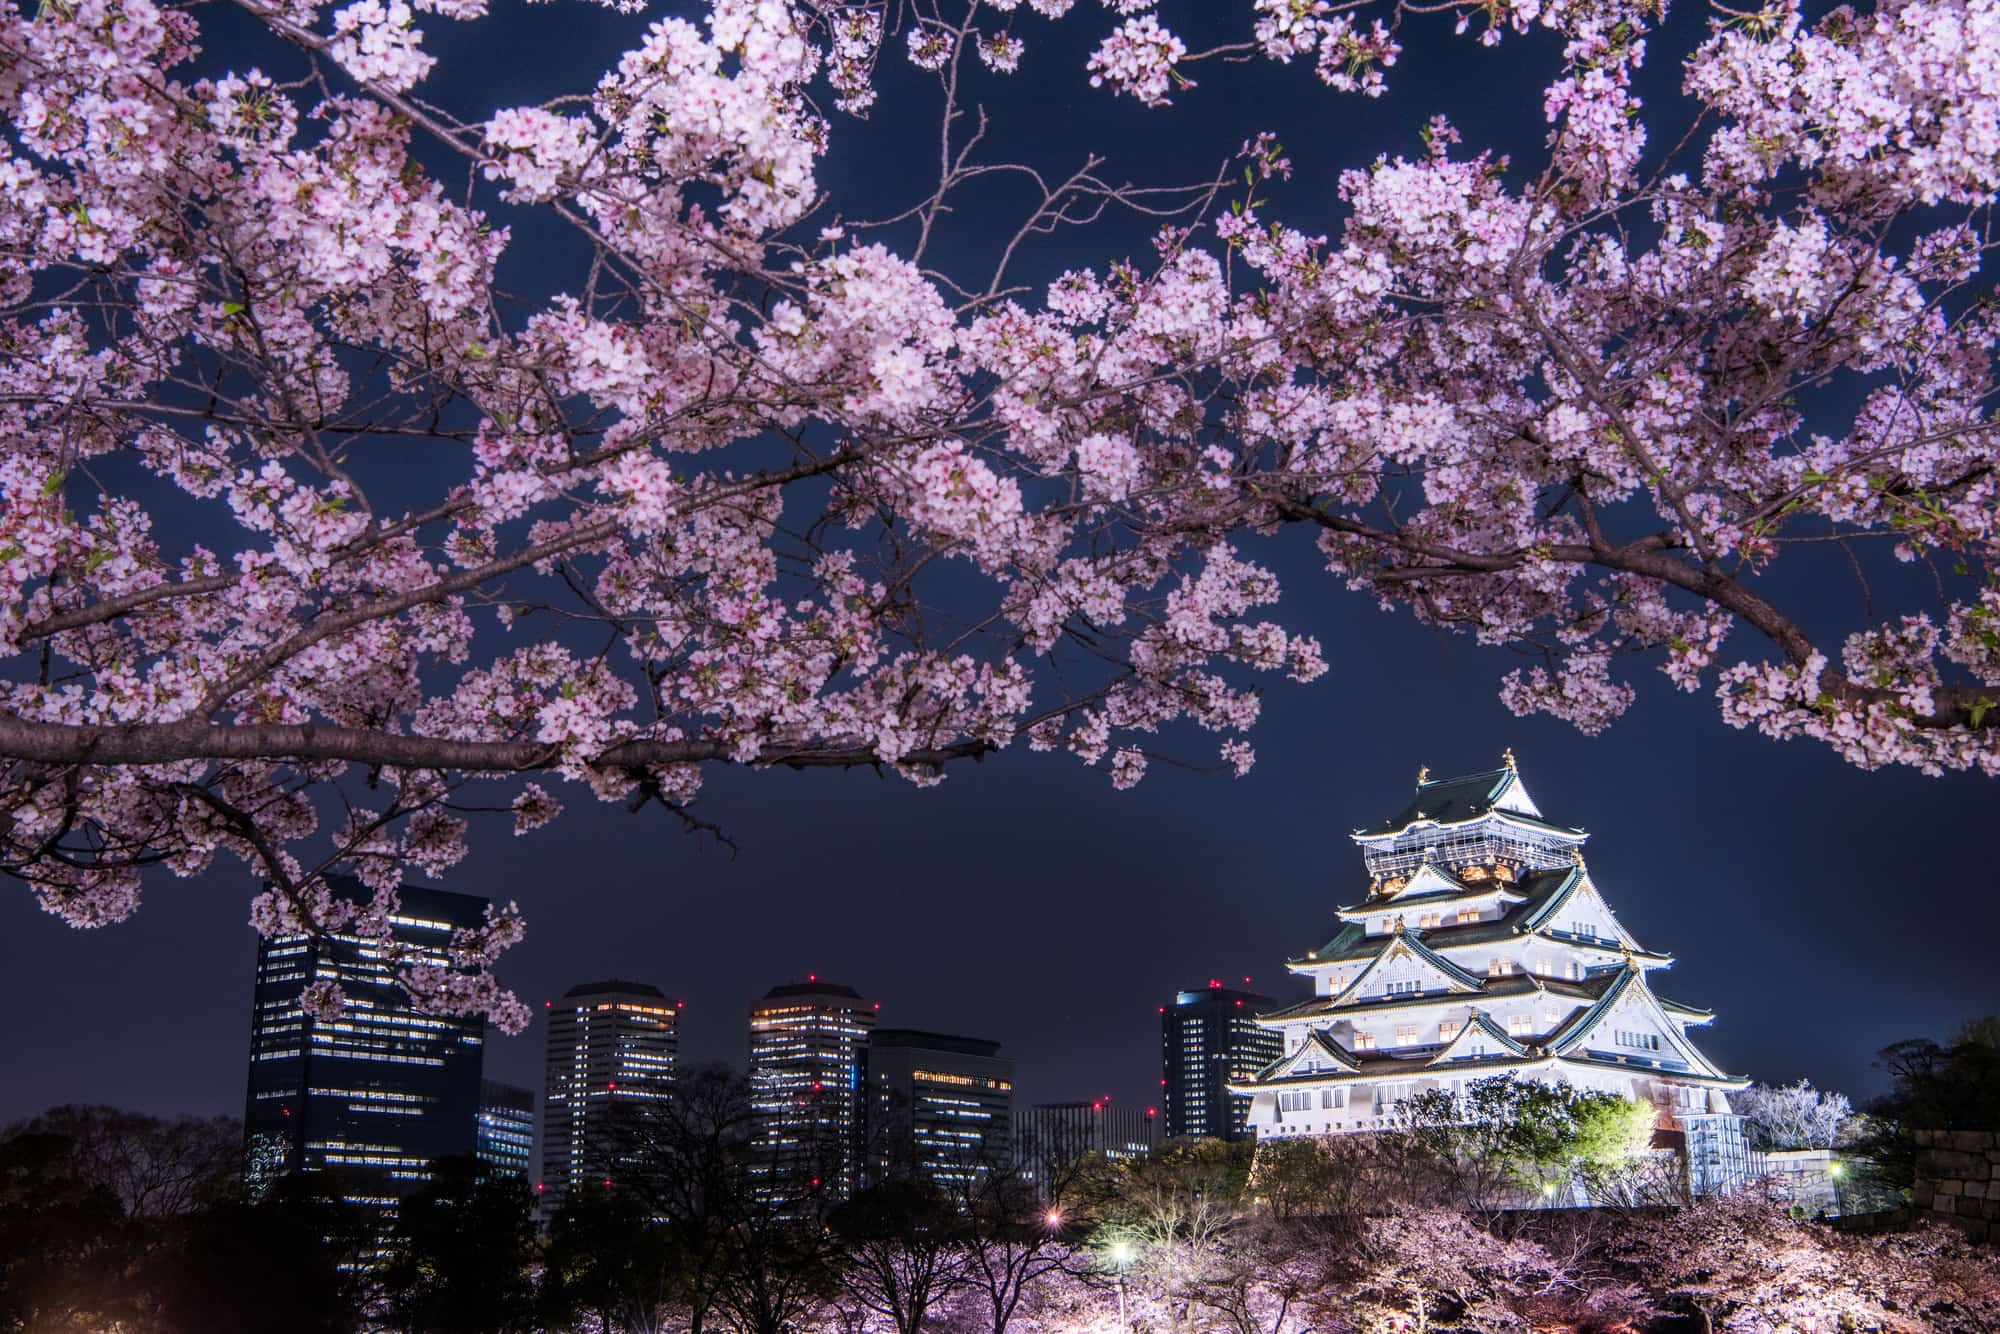 Nhật Bản là nơi của những cánh hoa anh đào và nền trời xanh biết bao. Đây là thời điểm tuyệt vời để đi du lịch tại Osaka và trải nghiệm không gian thơ mộng của những hàng cây anh đào rực rỡ. Hãy xem hình ảnh đính kèm để tận hưởng vẻ đẹp của thành phố Osaka!